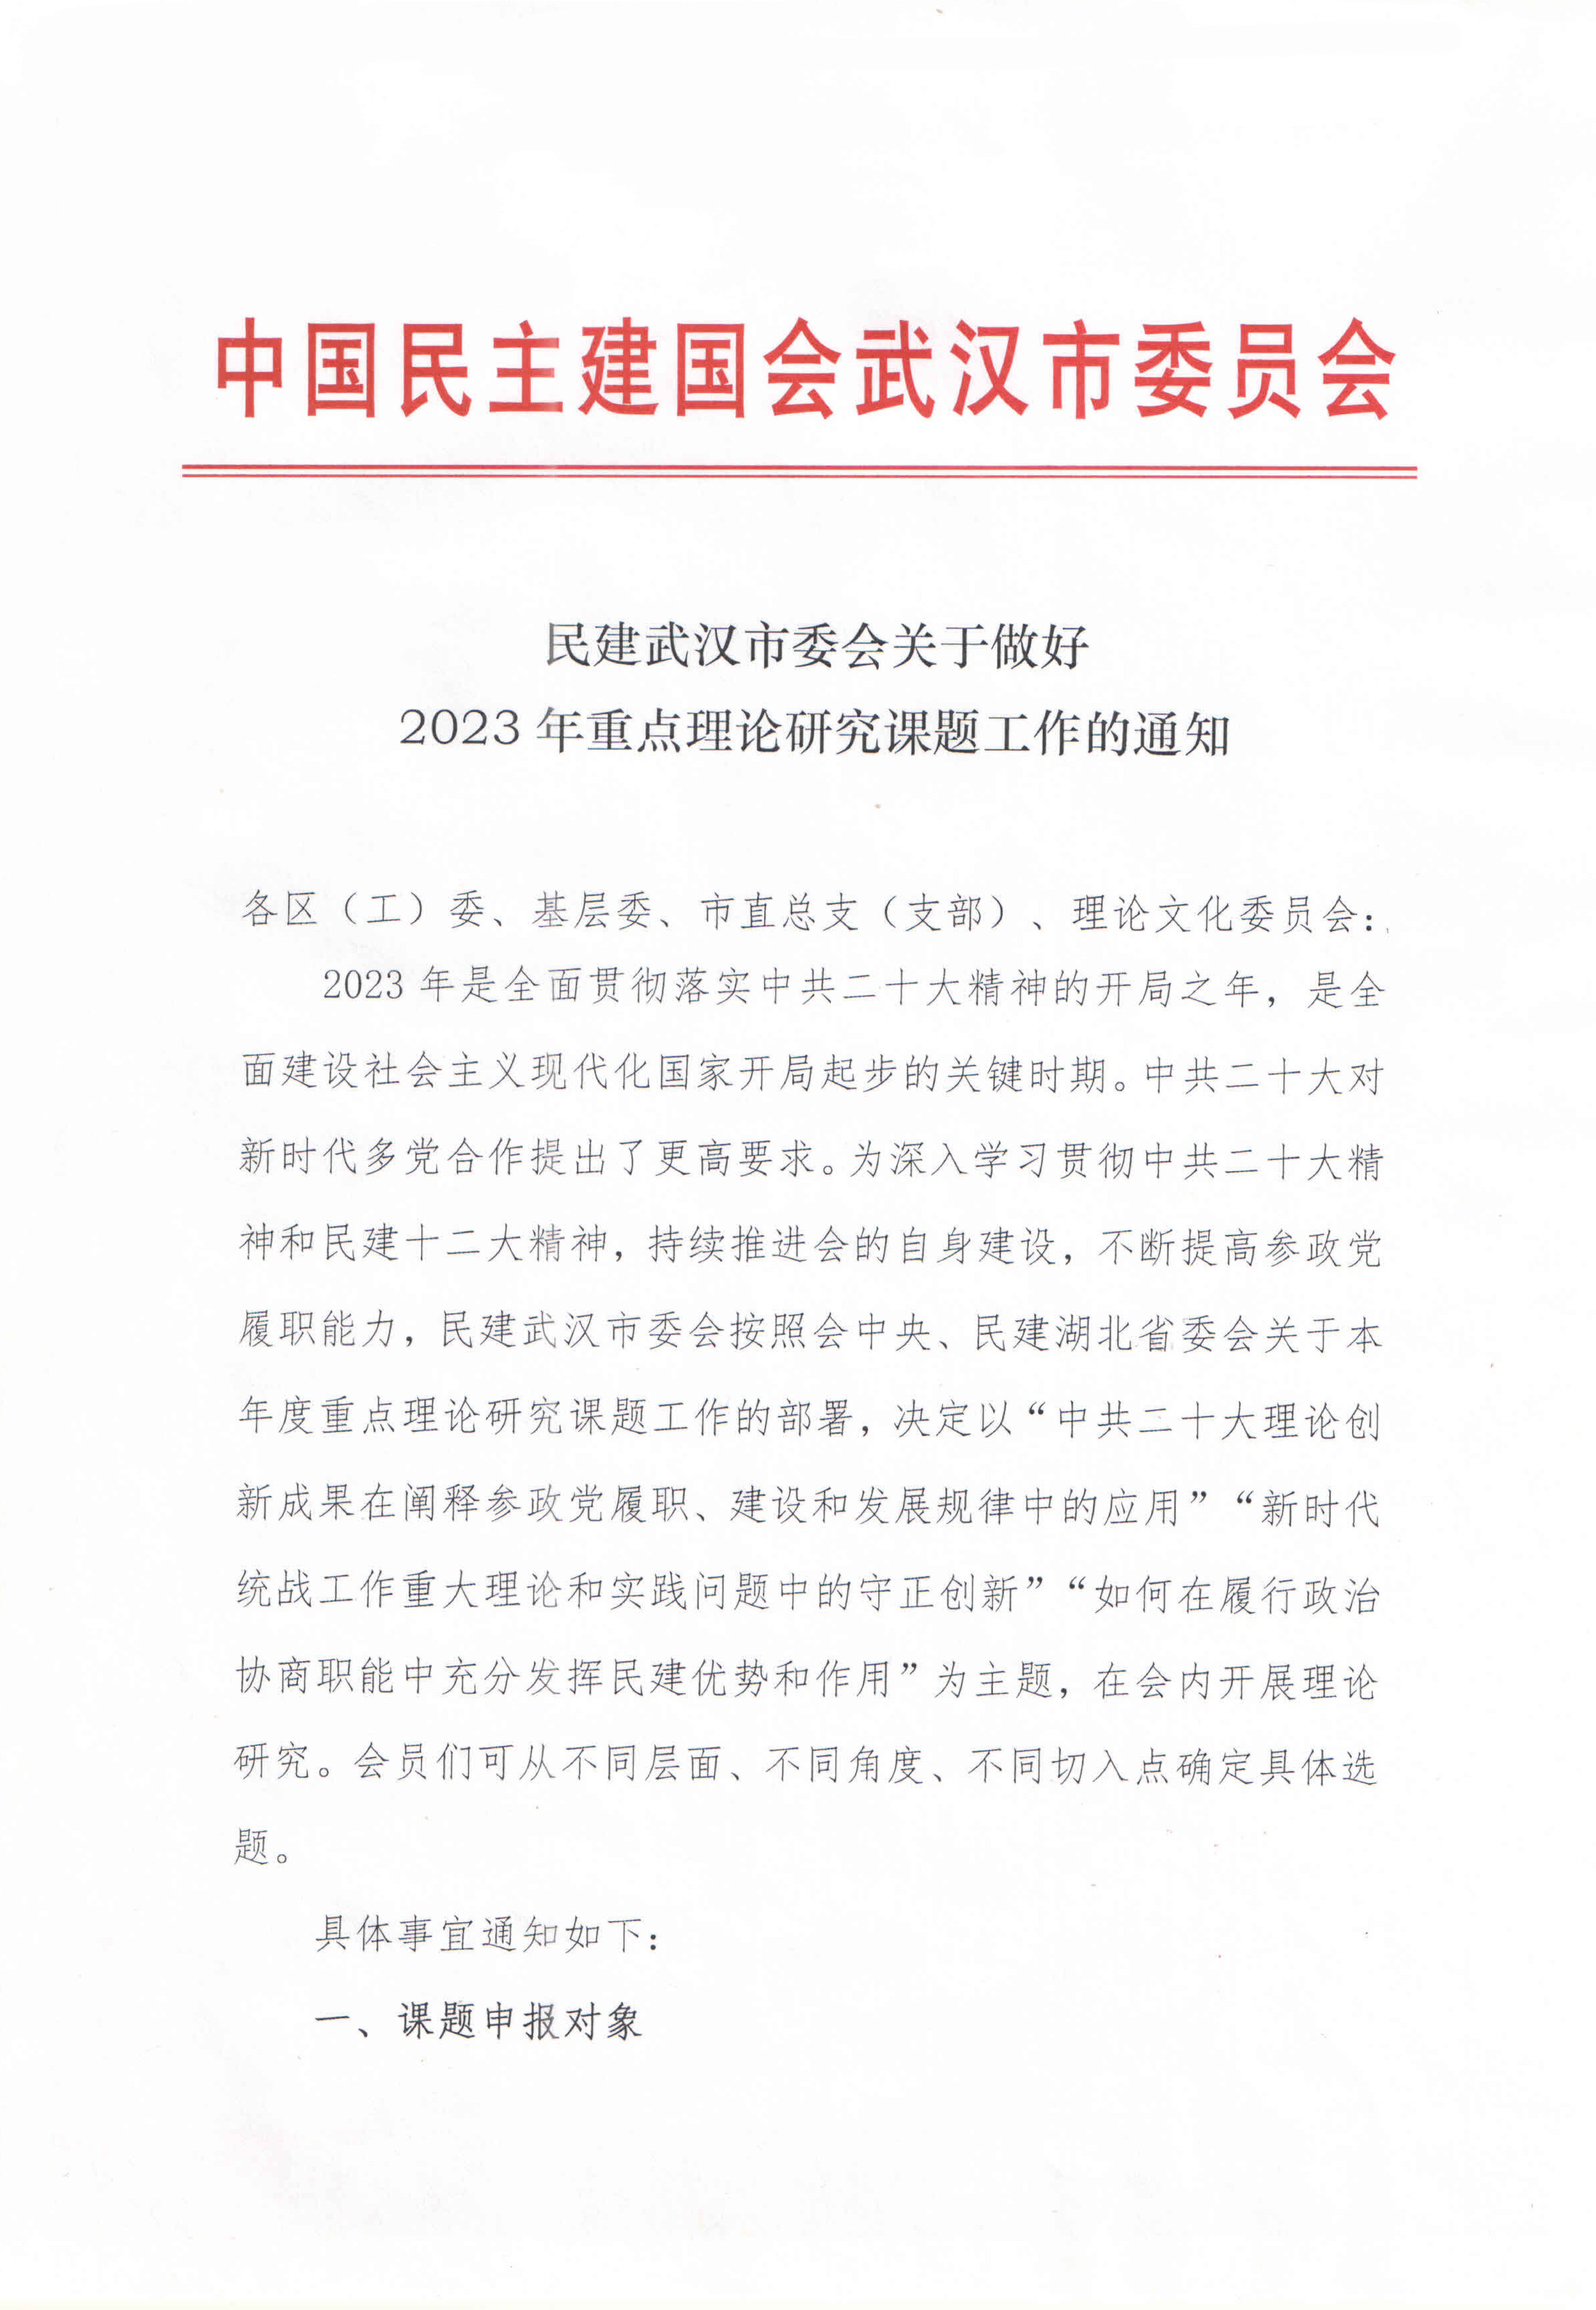 民建武汉市委会关于做好2023年重点理论研究课题工作的通知_00.png